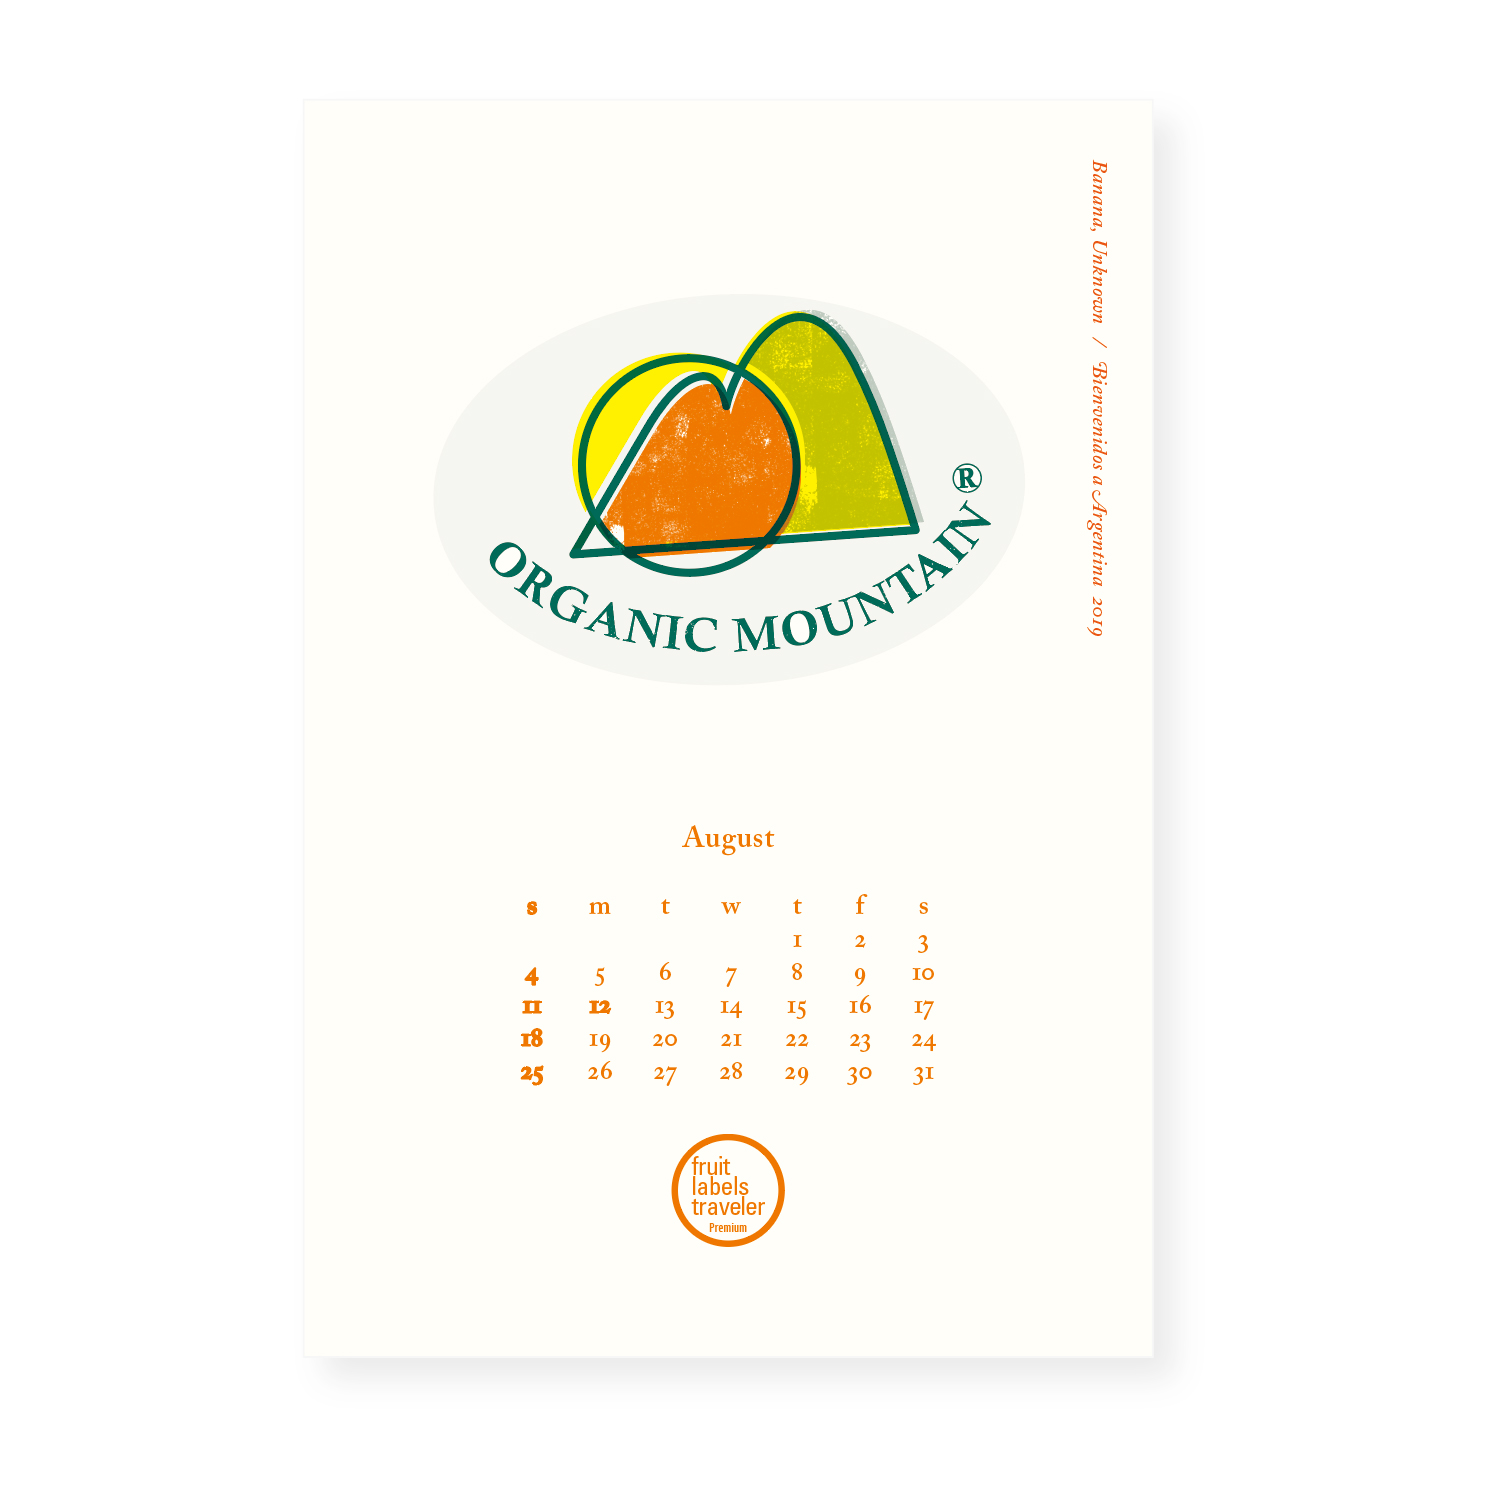 Fruit labels traveler’s Calendar Series “Bienvenidos a Argentina" 2019